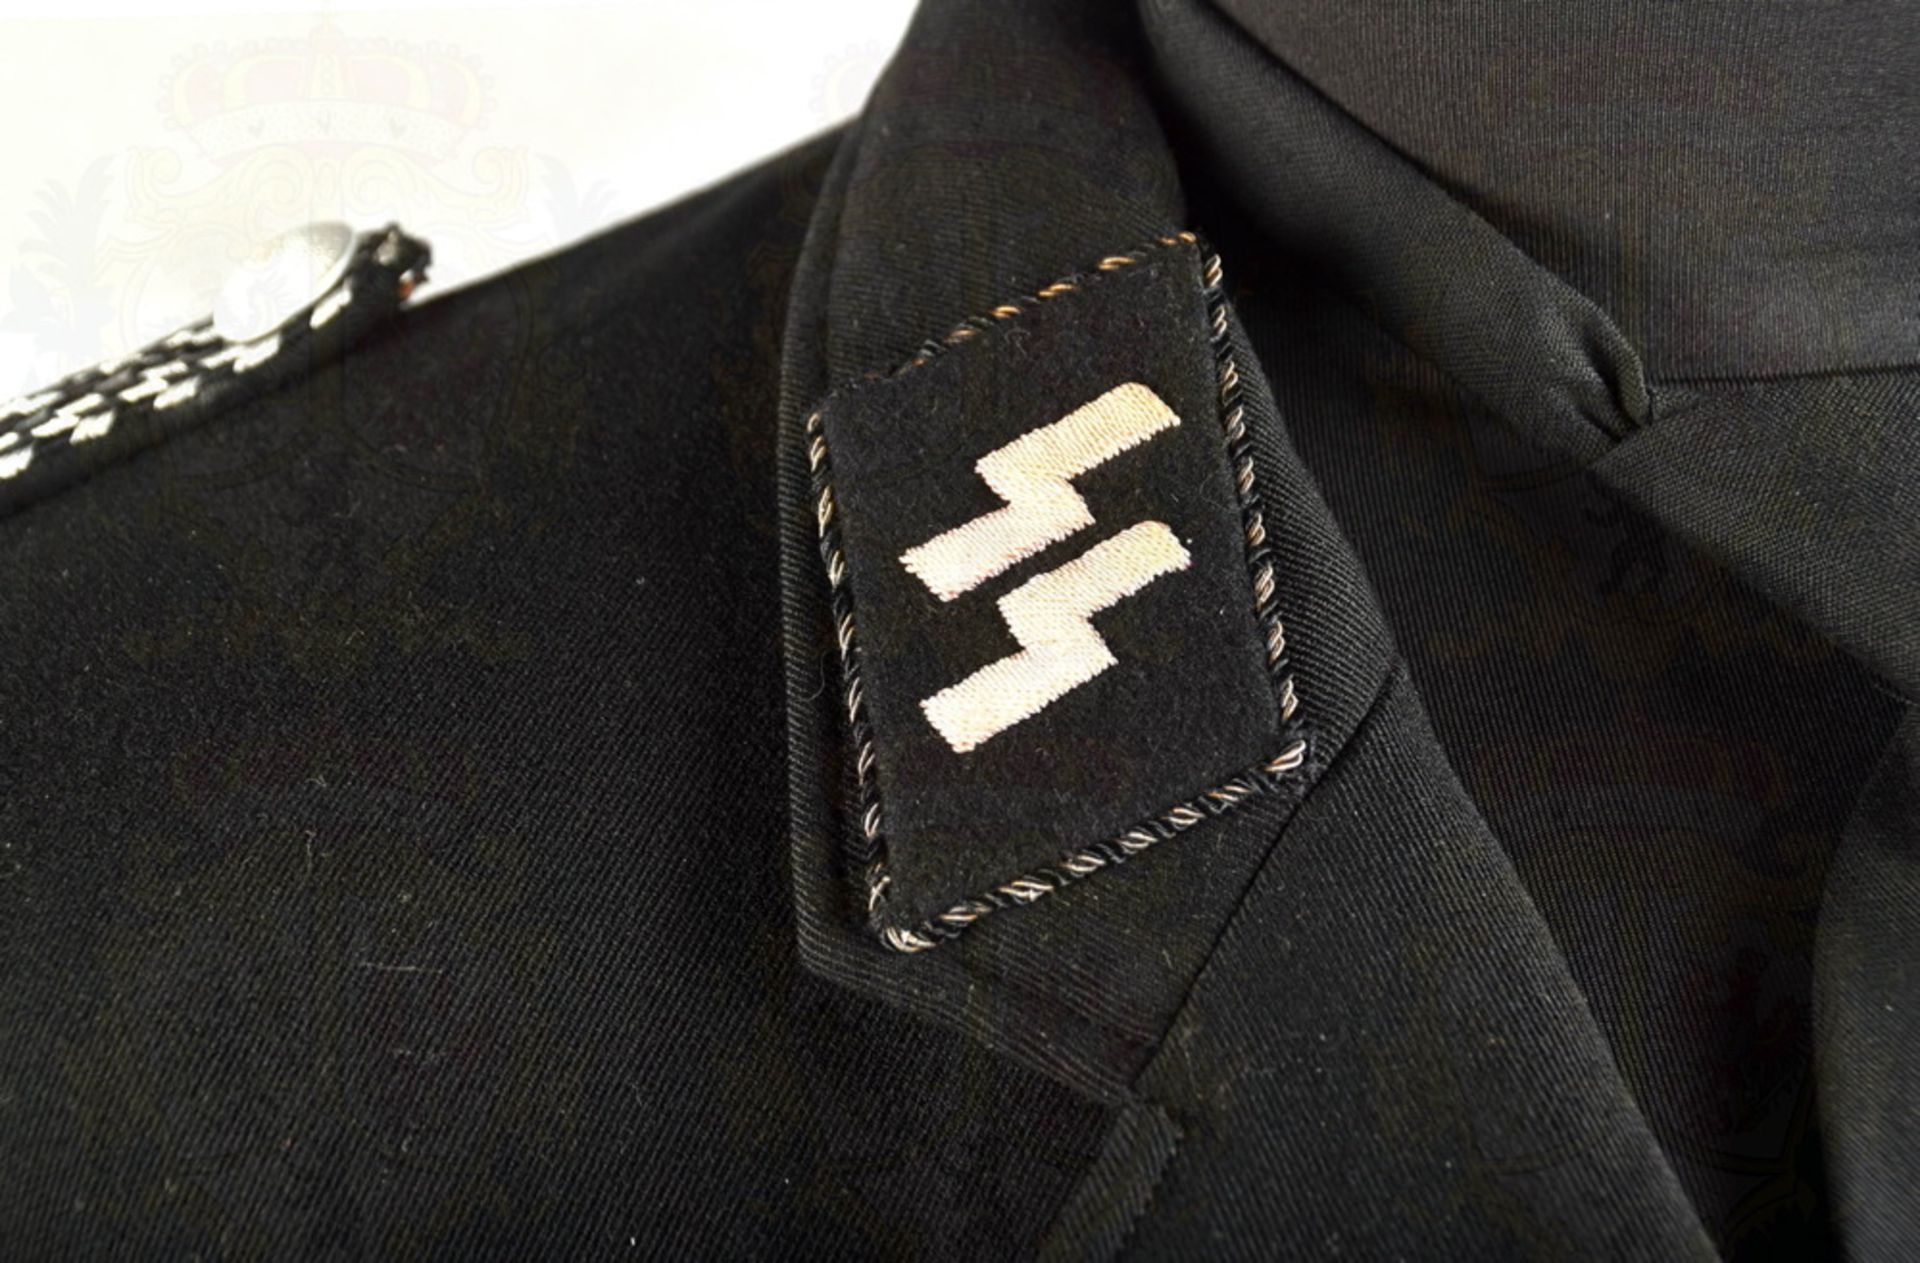 Tunic of a Leibstandarte SS Unterscharführer/SS NCO - Image 7 of 12